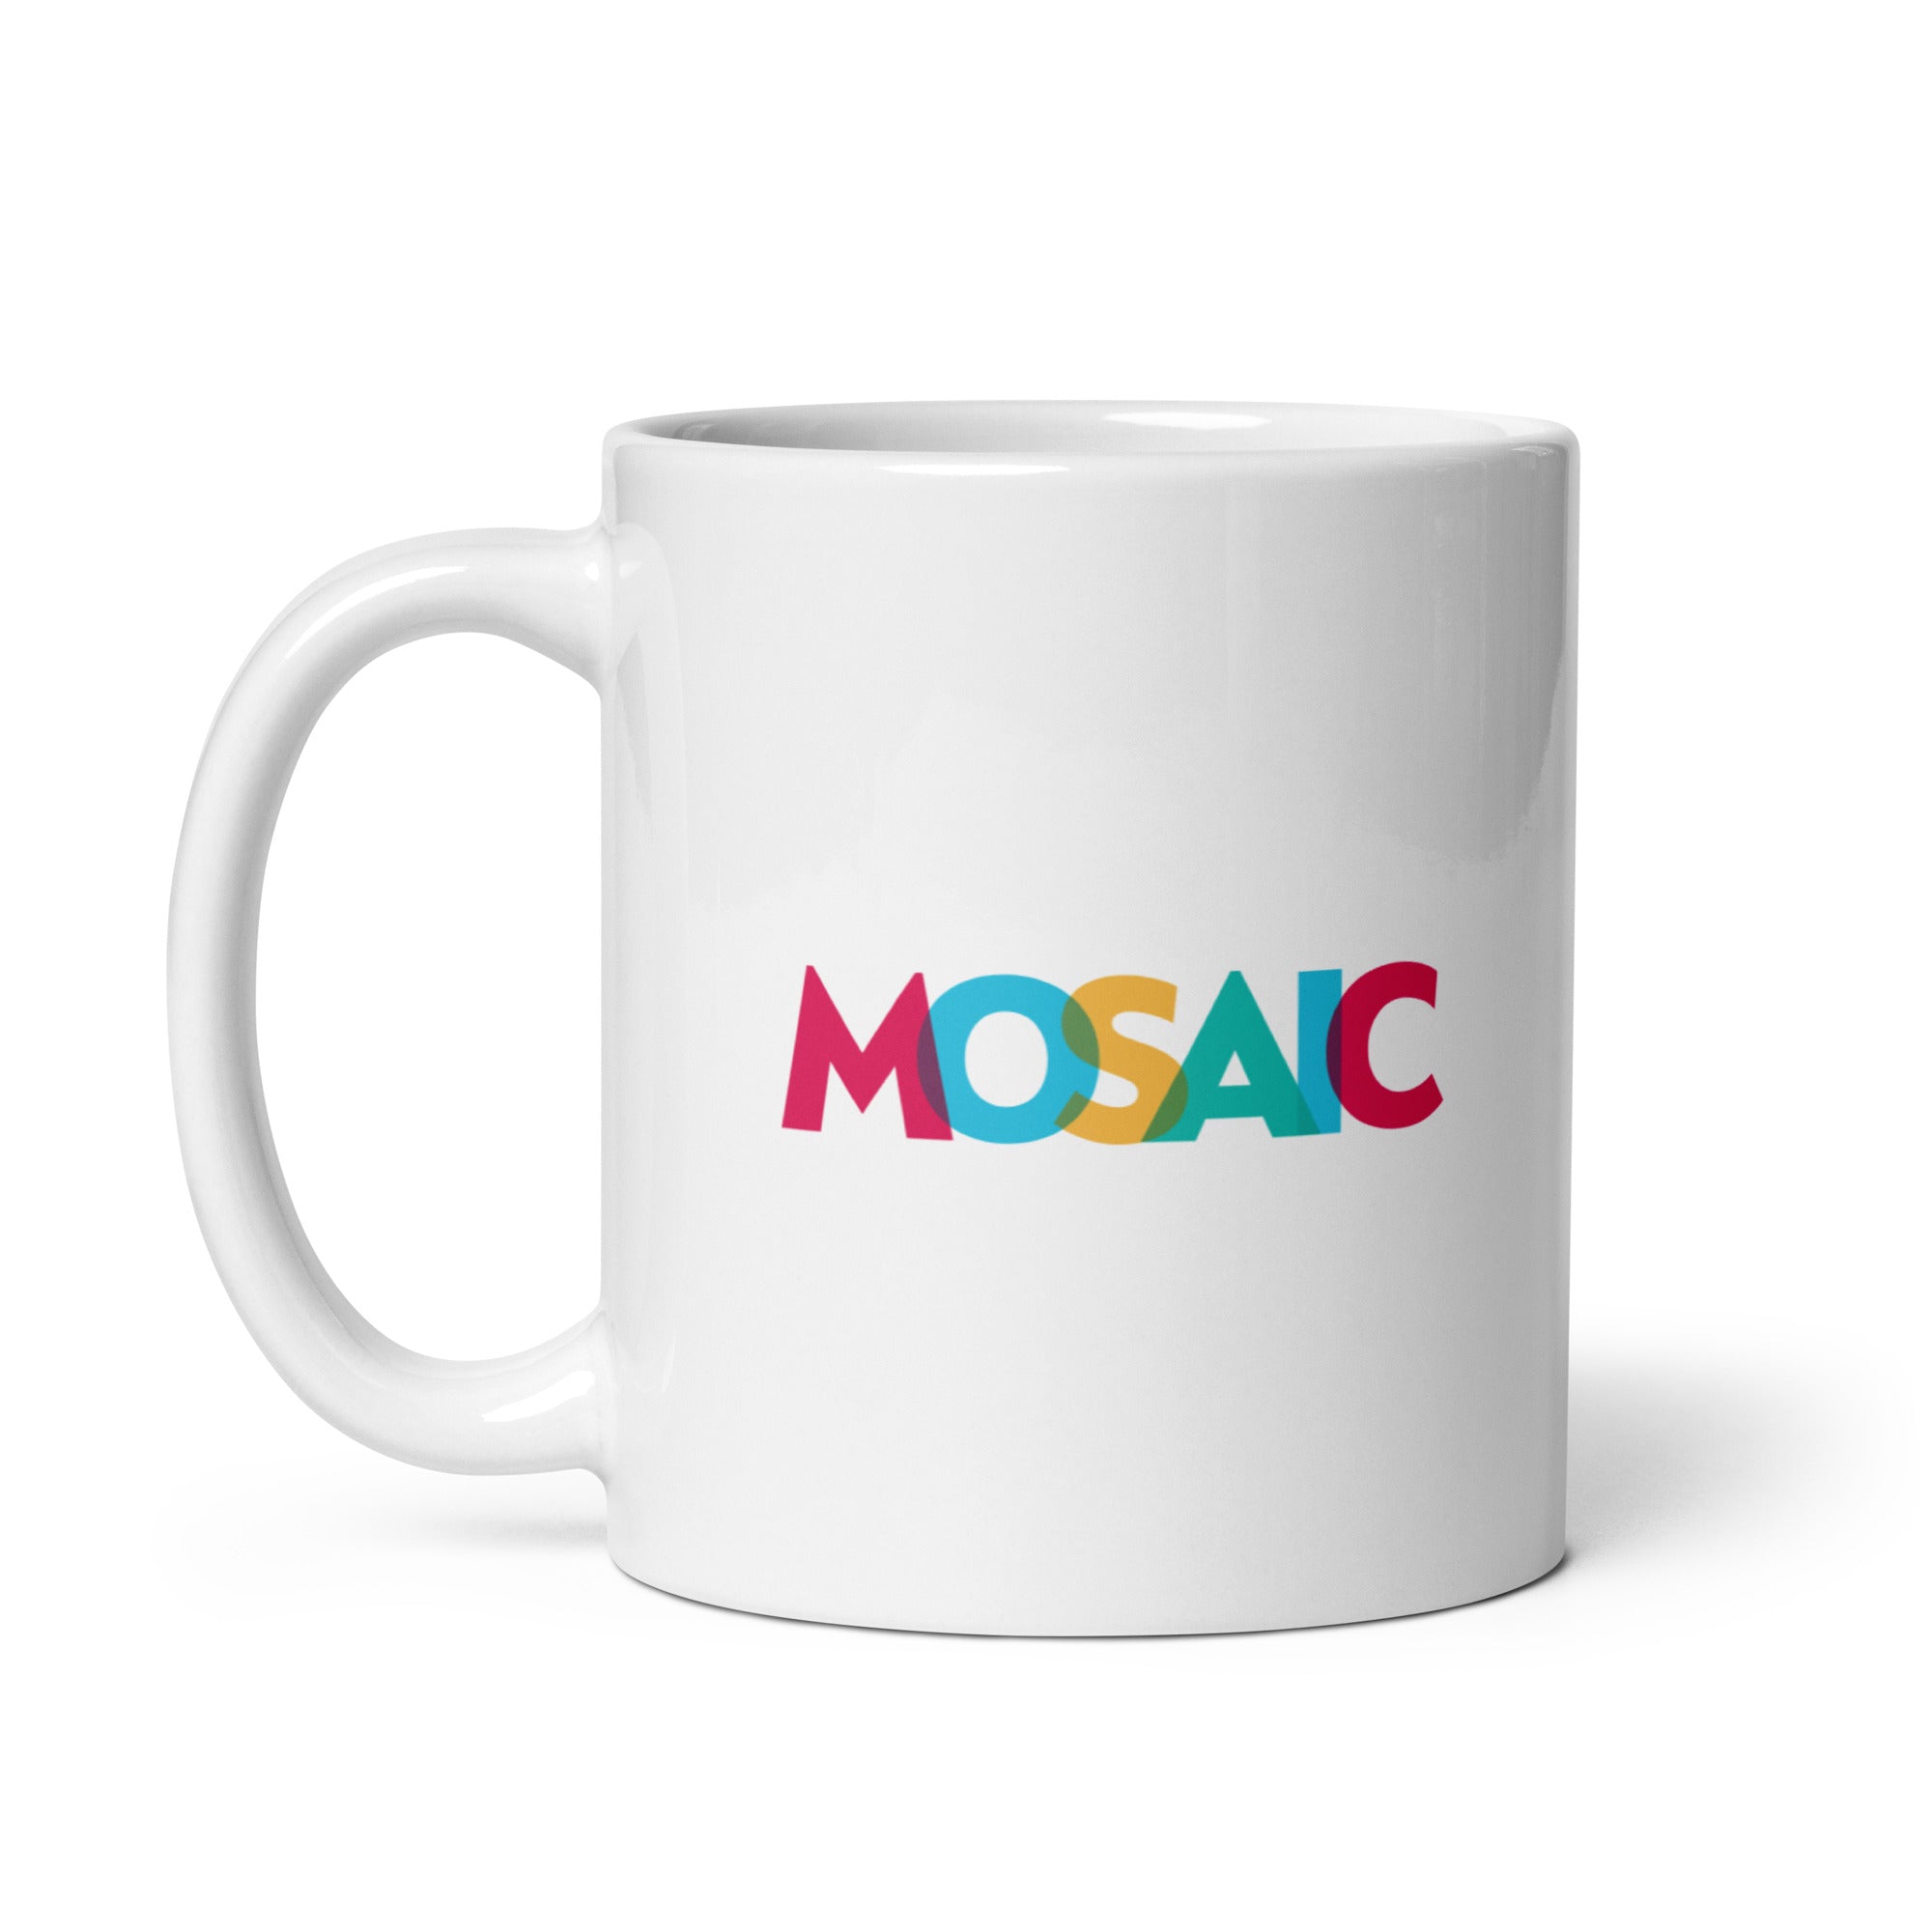 Mosaic: Mug